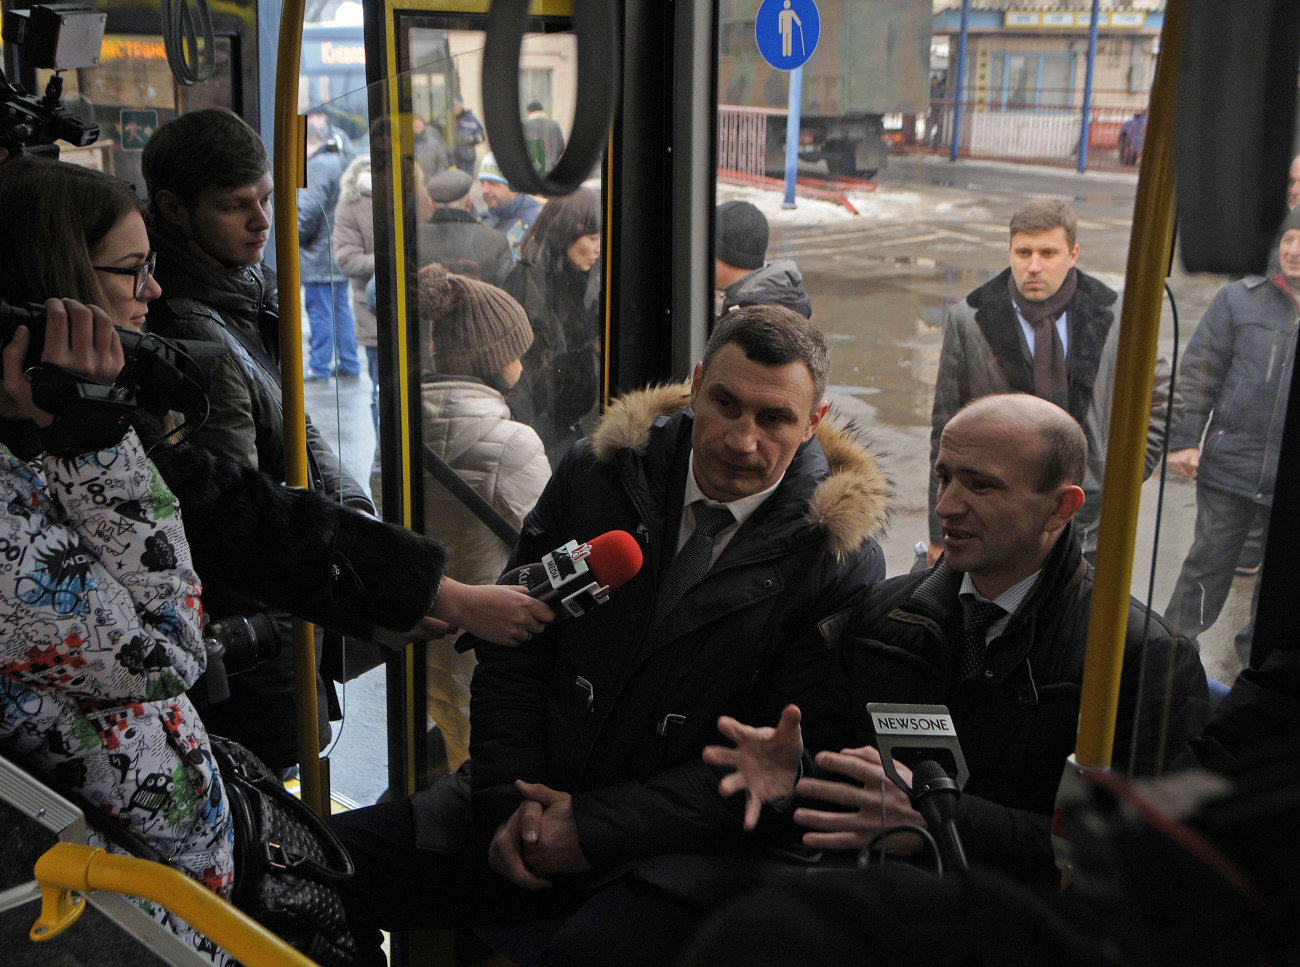 За неделю на улицы Киева выйдут 50 новых автобусов